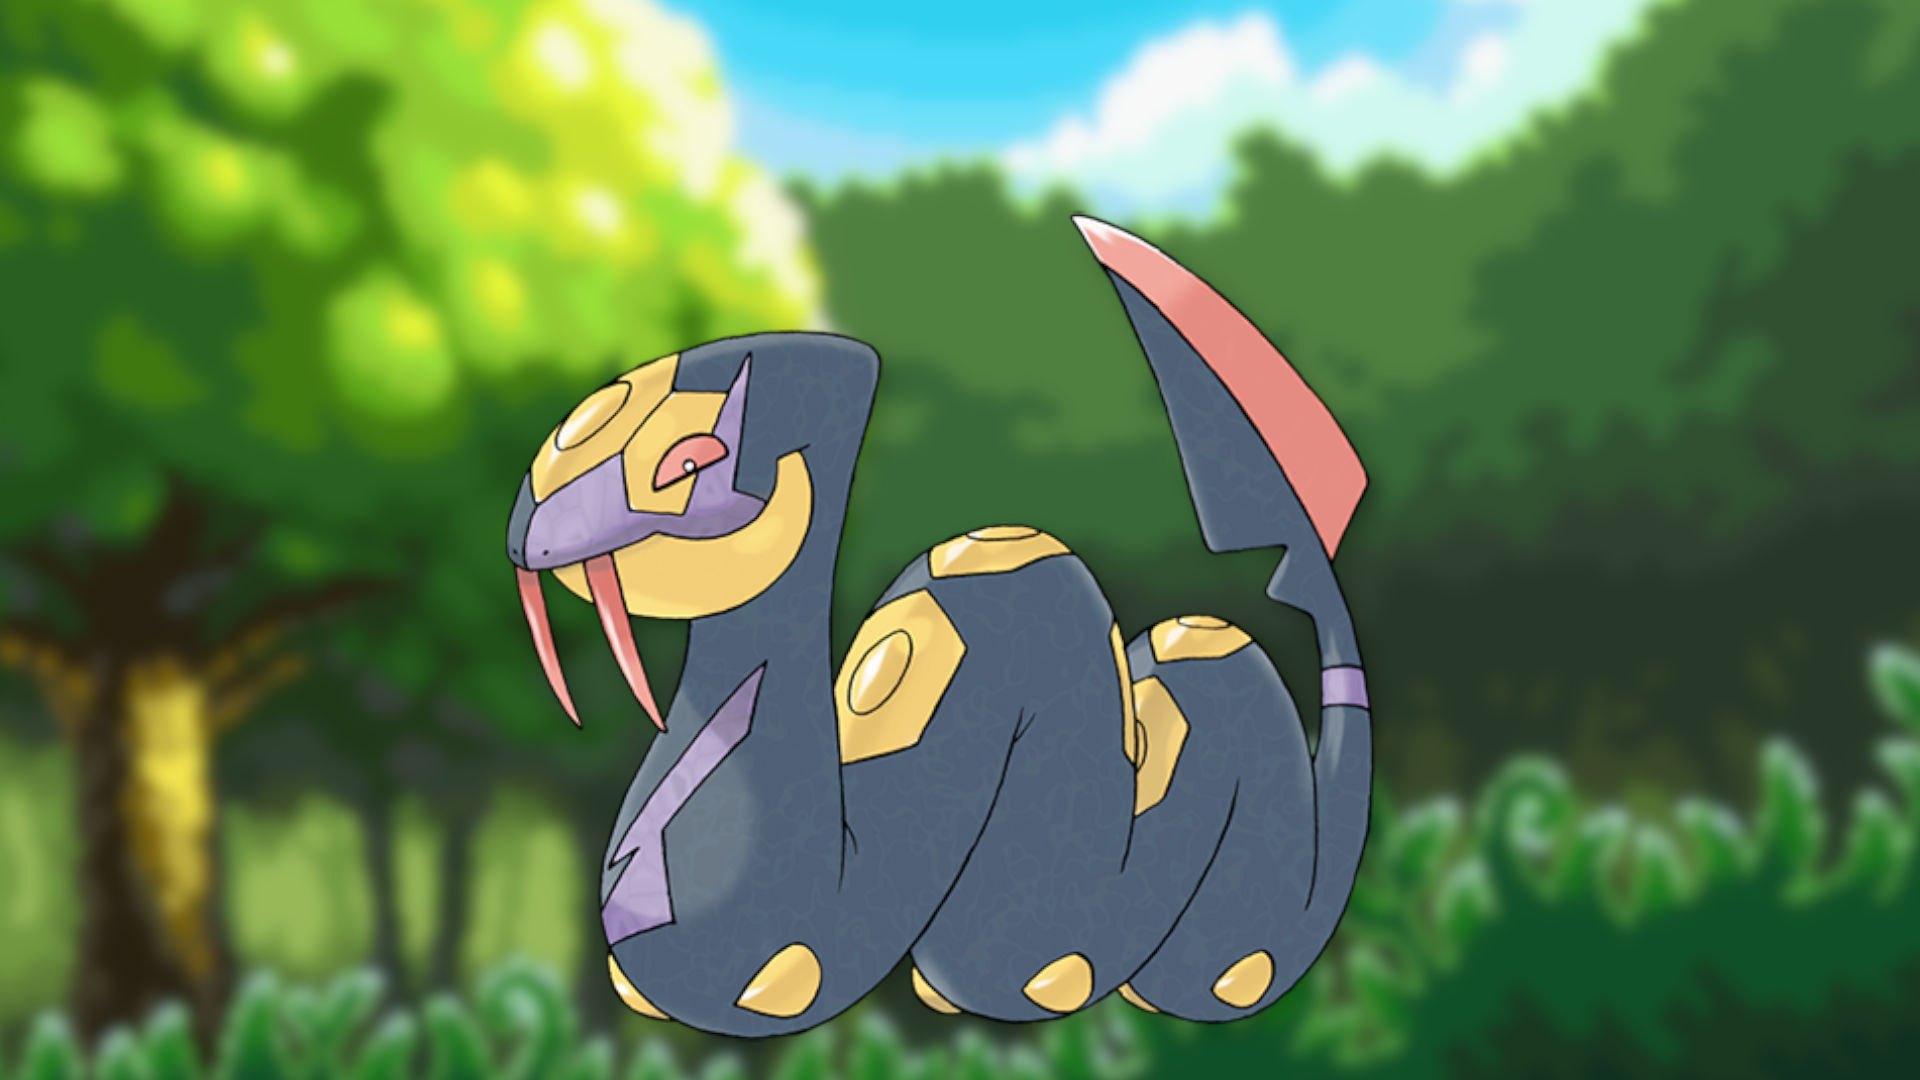 Custom image of Seviper in a field for snake Pokémon guide